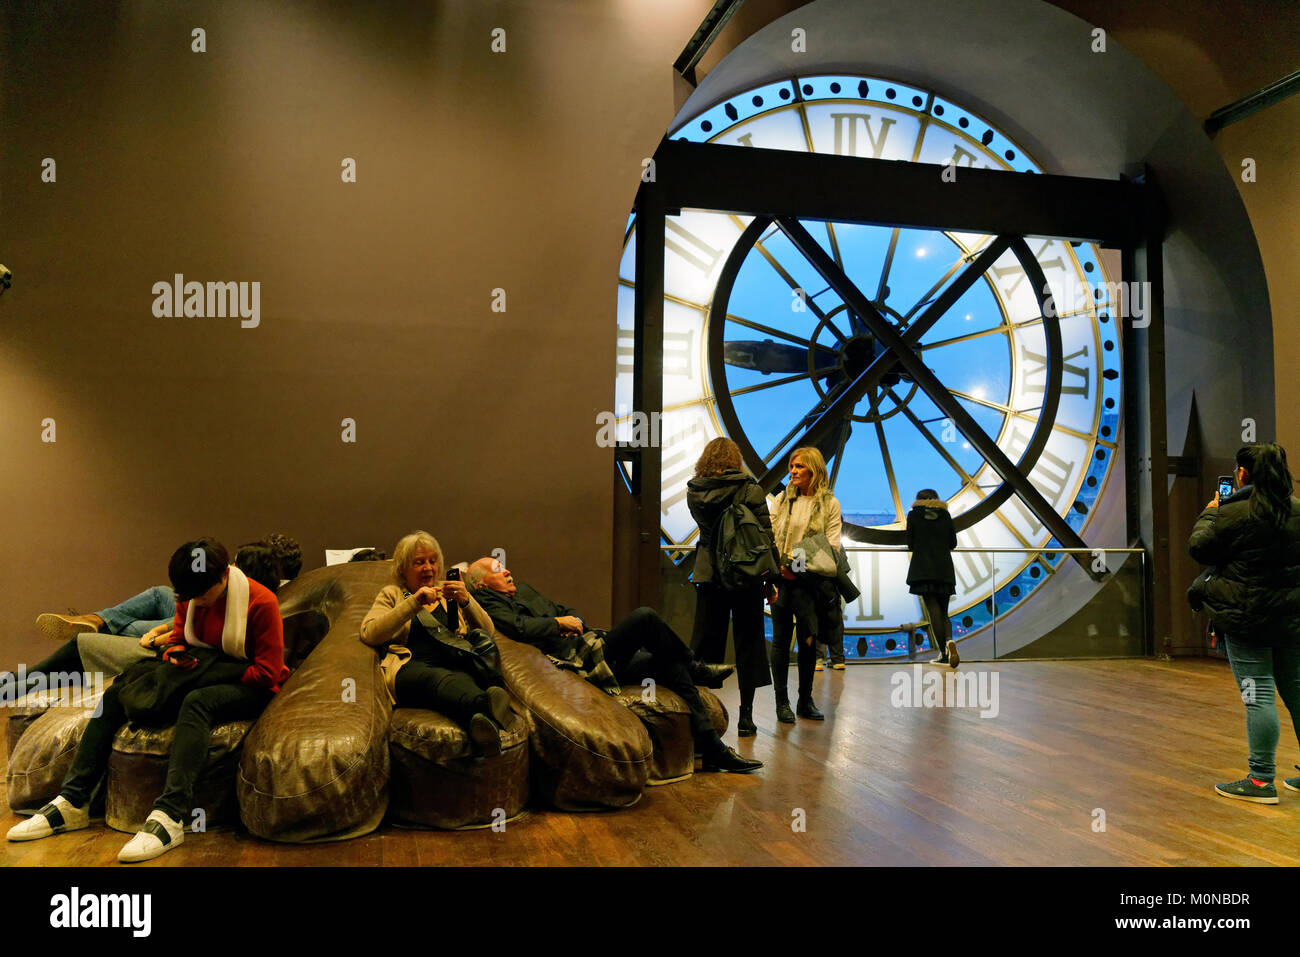 Früher ein Bahnhof, Musée d'Orsay in Paris hat mehrere große Uhren. Jetzt ist es ein Museum eine bedeutende Sammlung impressionistischer Kunst. Stockfoto